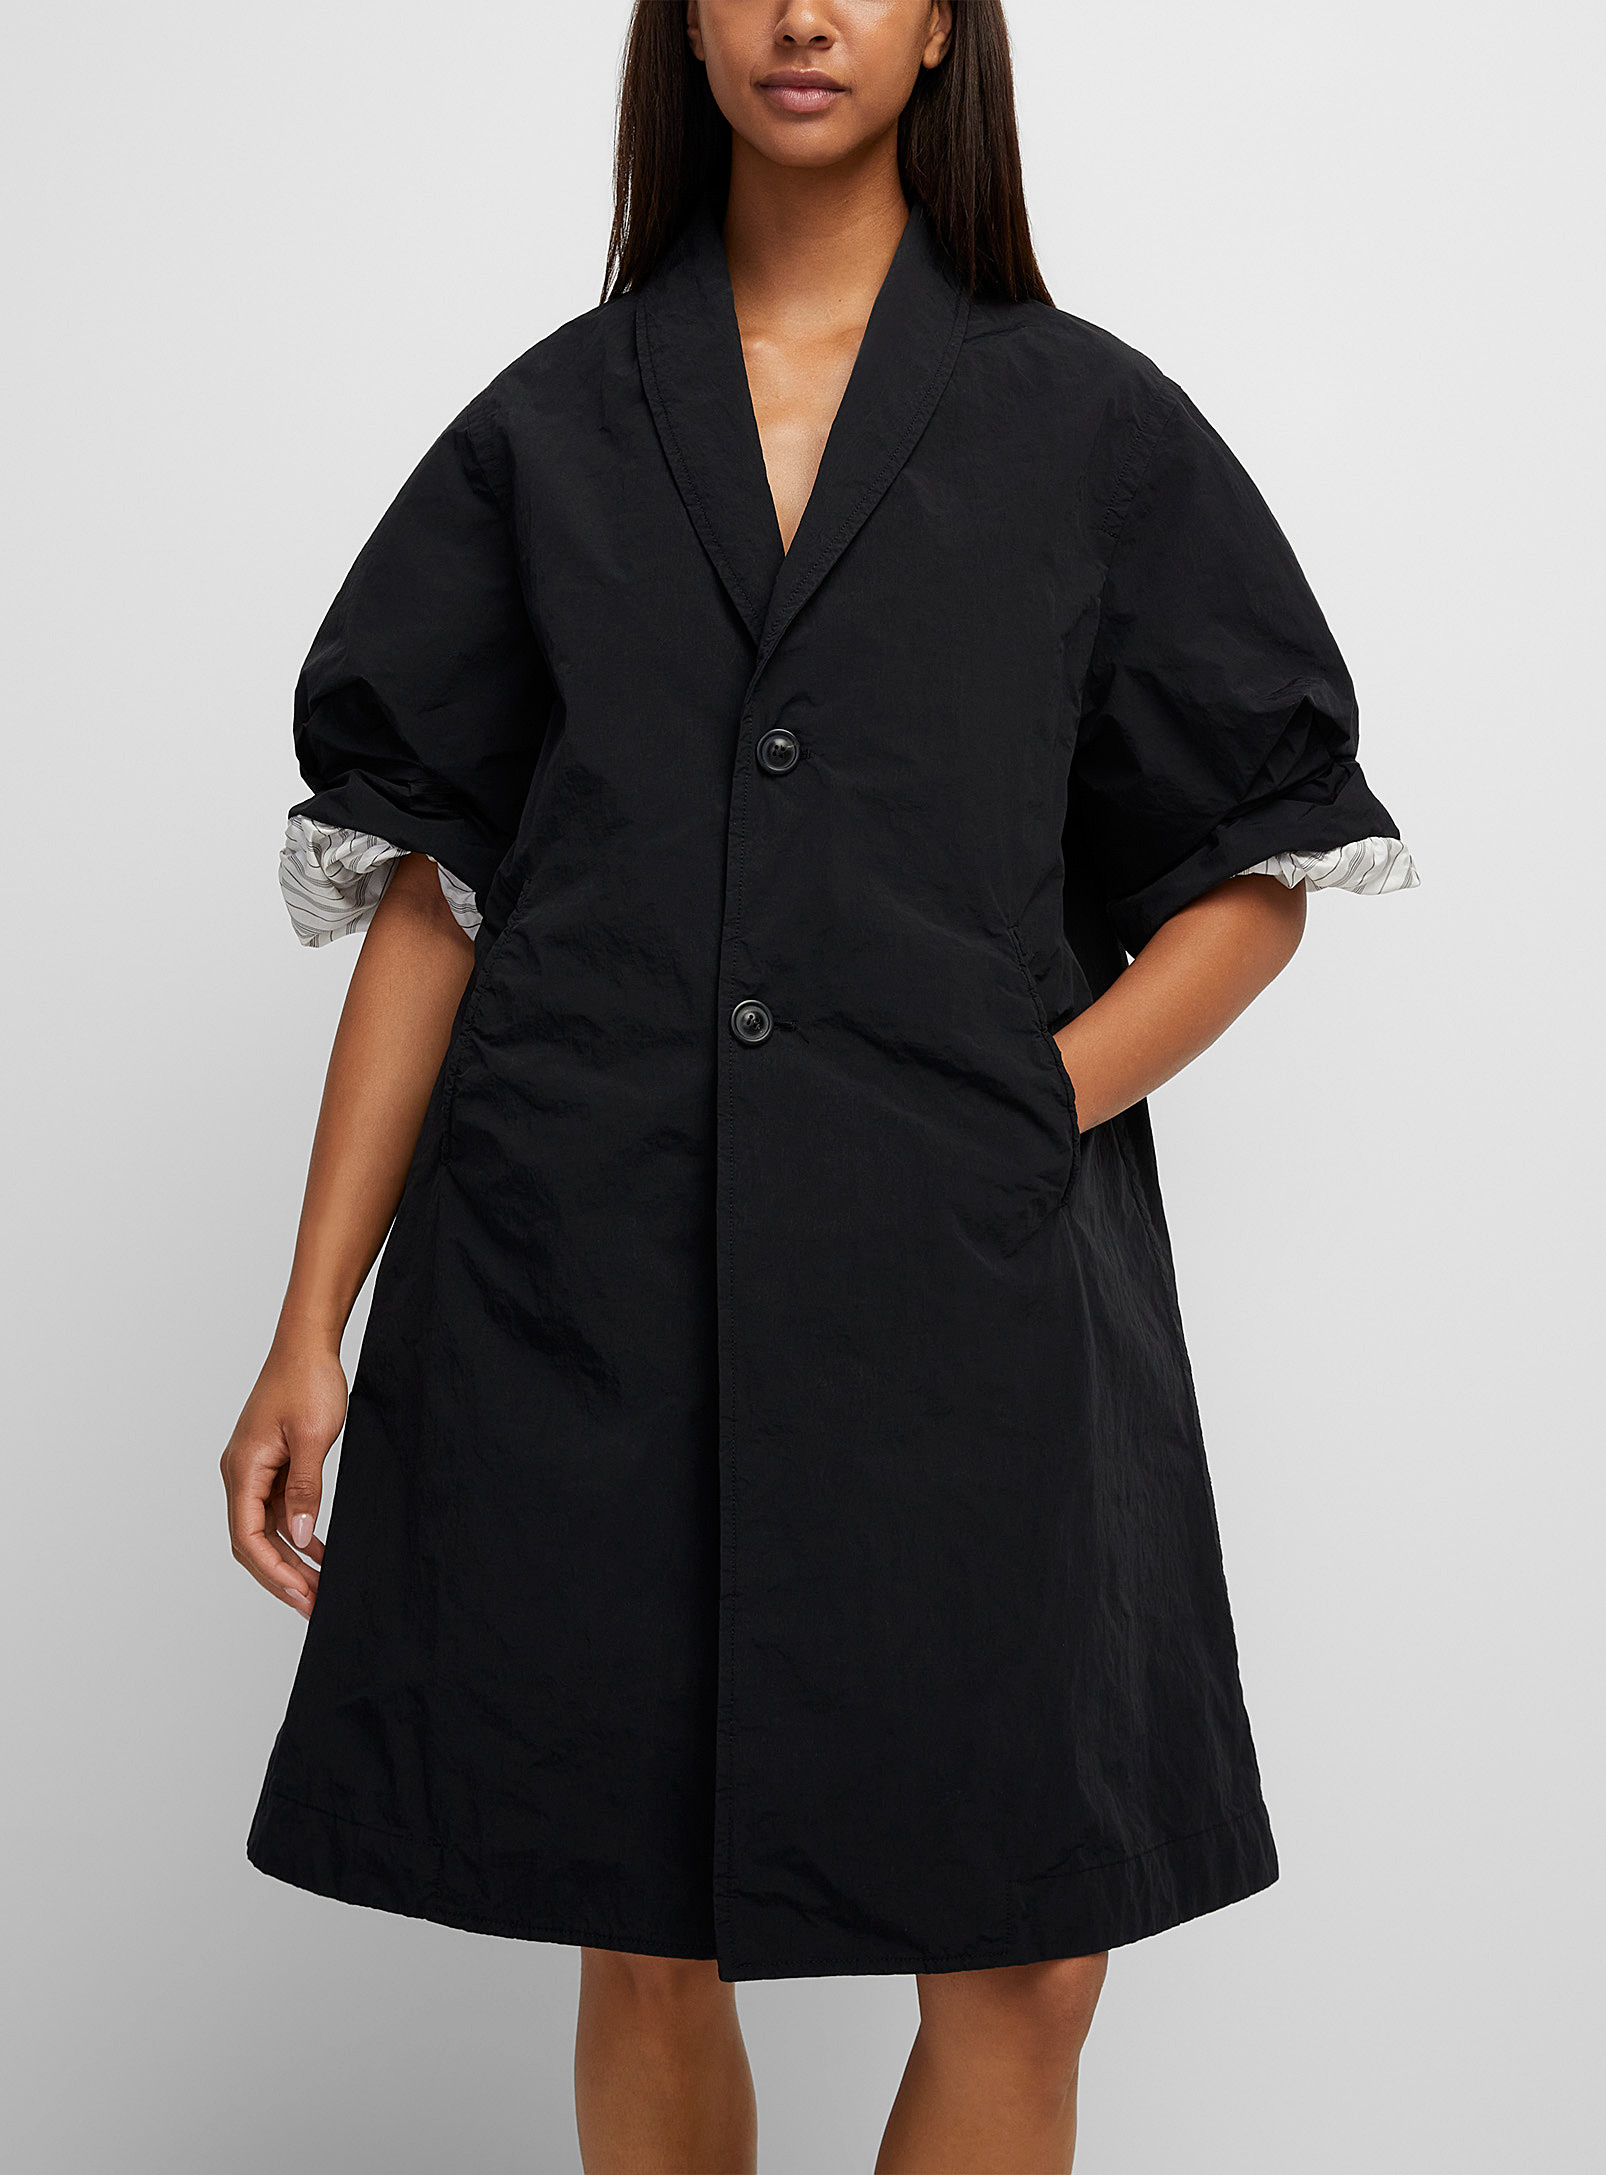 Maison Margiela - Women's Gathered sleeves trench coat